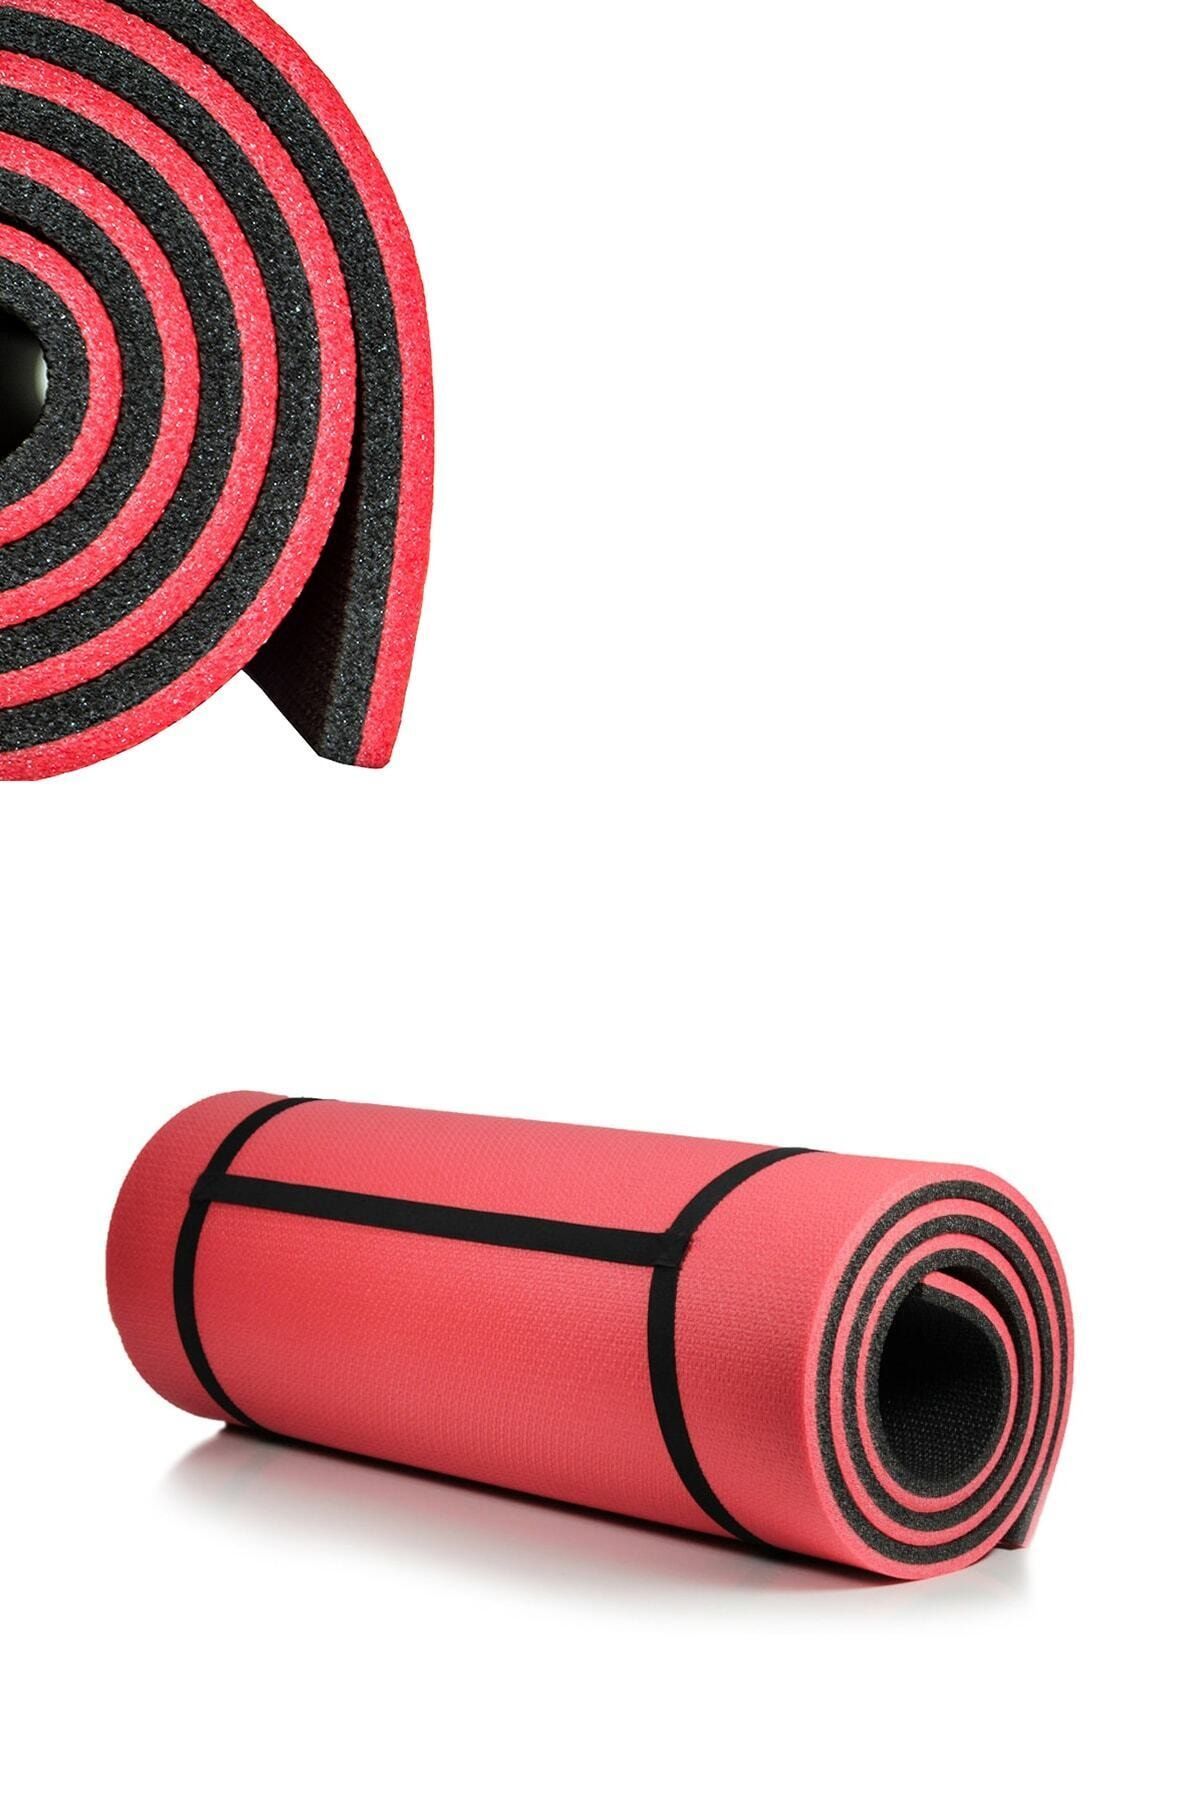 Leyaton Pilates Minderi Yoga Mat Fitness Egzersiz Minderi Nar Çiçeği Siyah